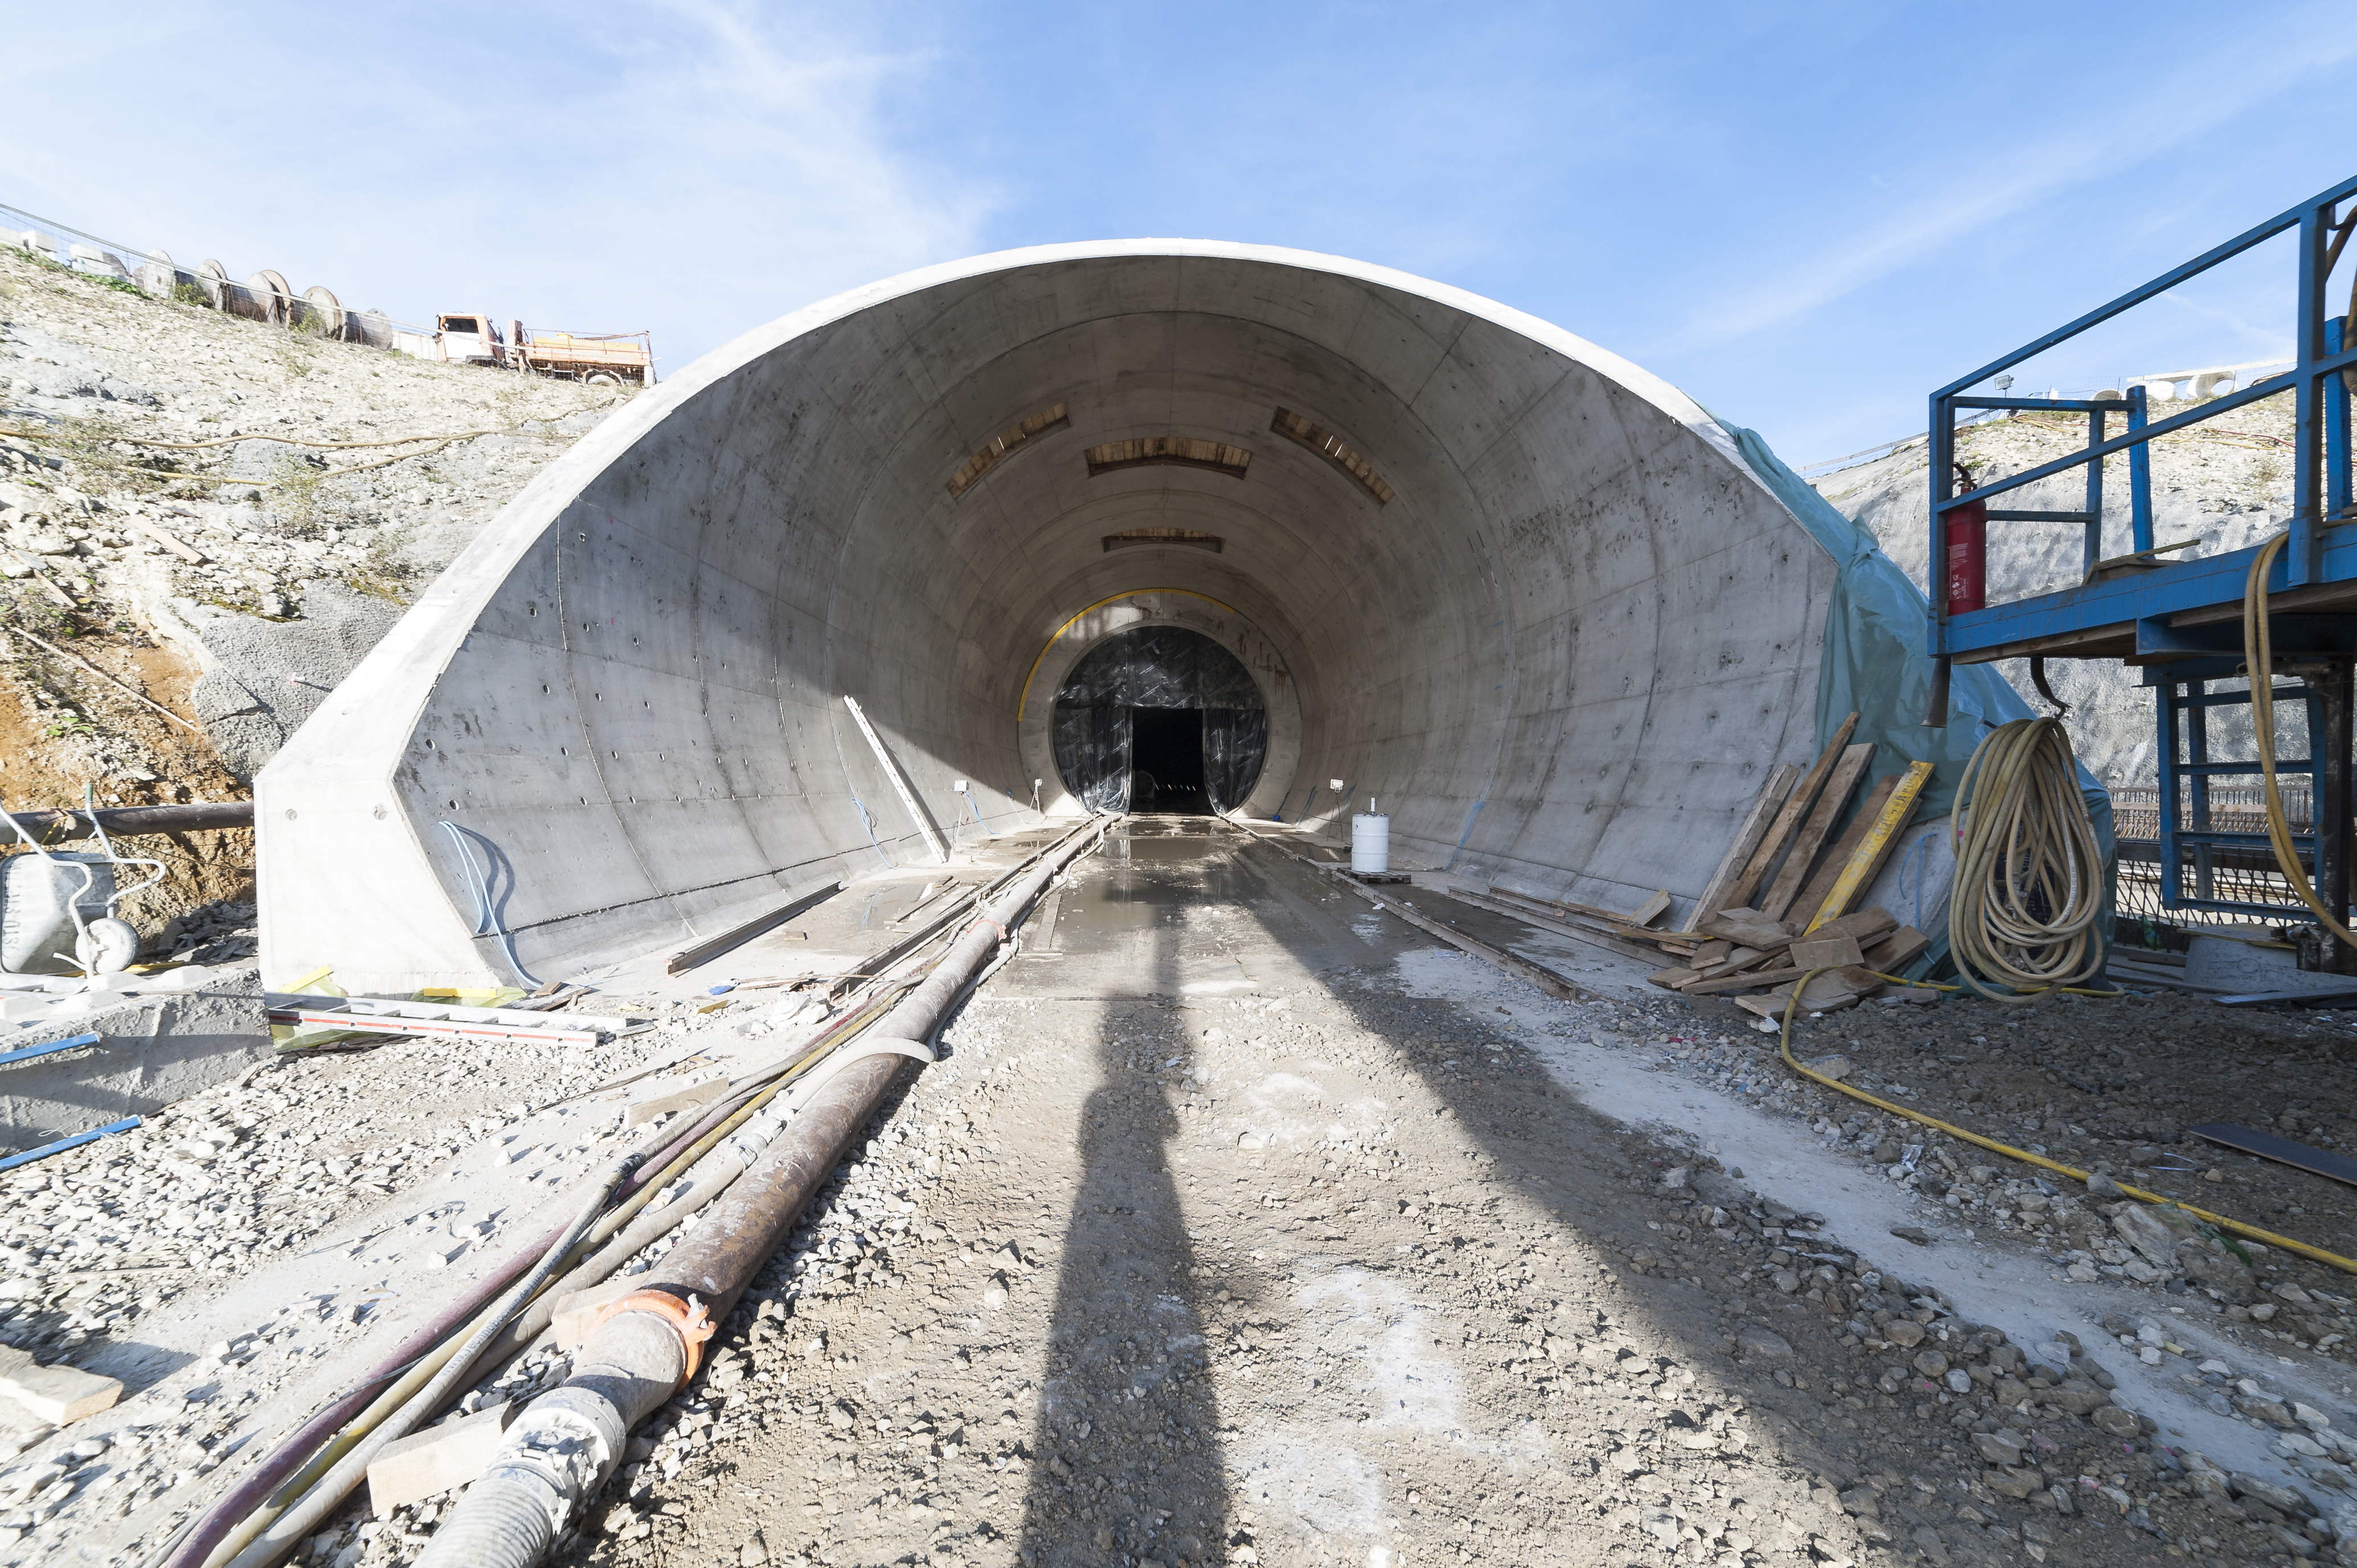 Tunnel Albaufstieg - Costruzione di gallerie